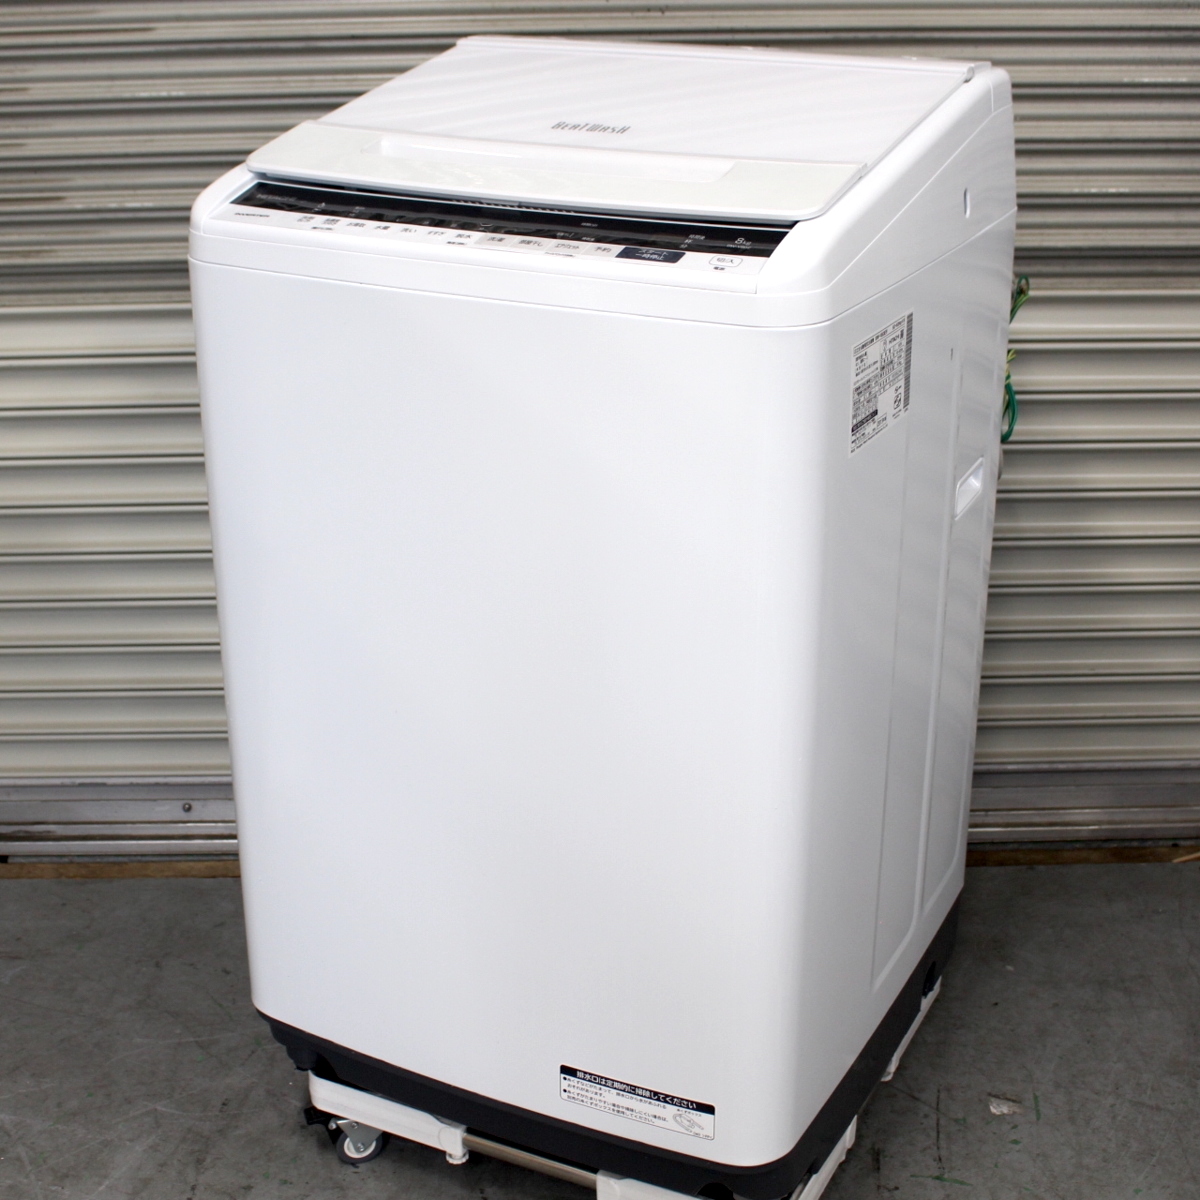 東京都品川区にて 日立 洗濯機 BW-V80E 2019年製 を出張買取させて頂きました。